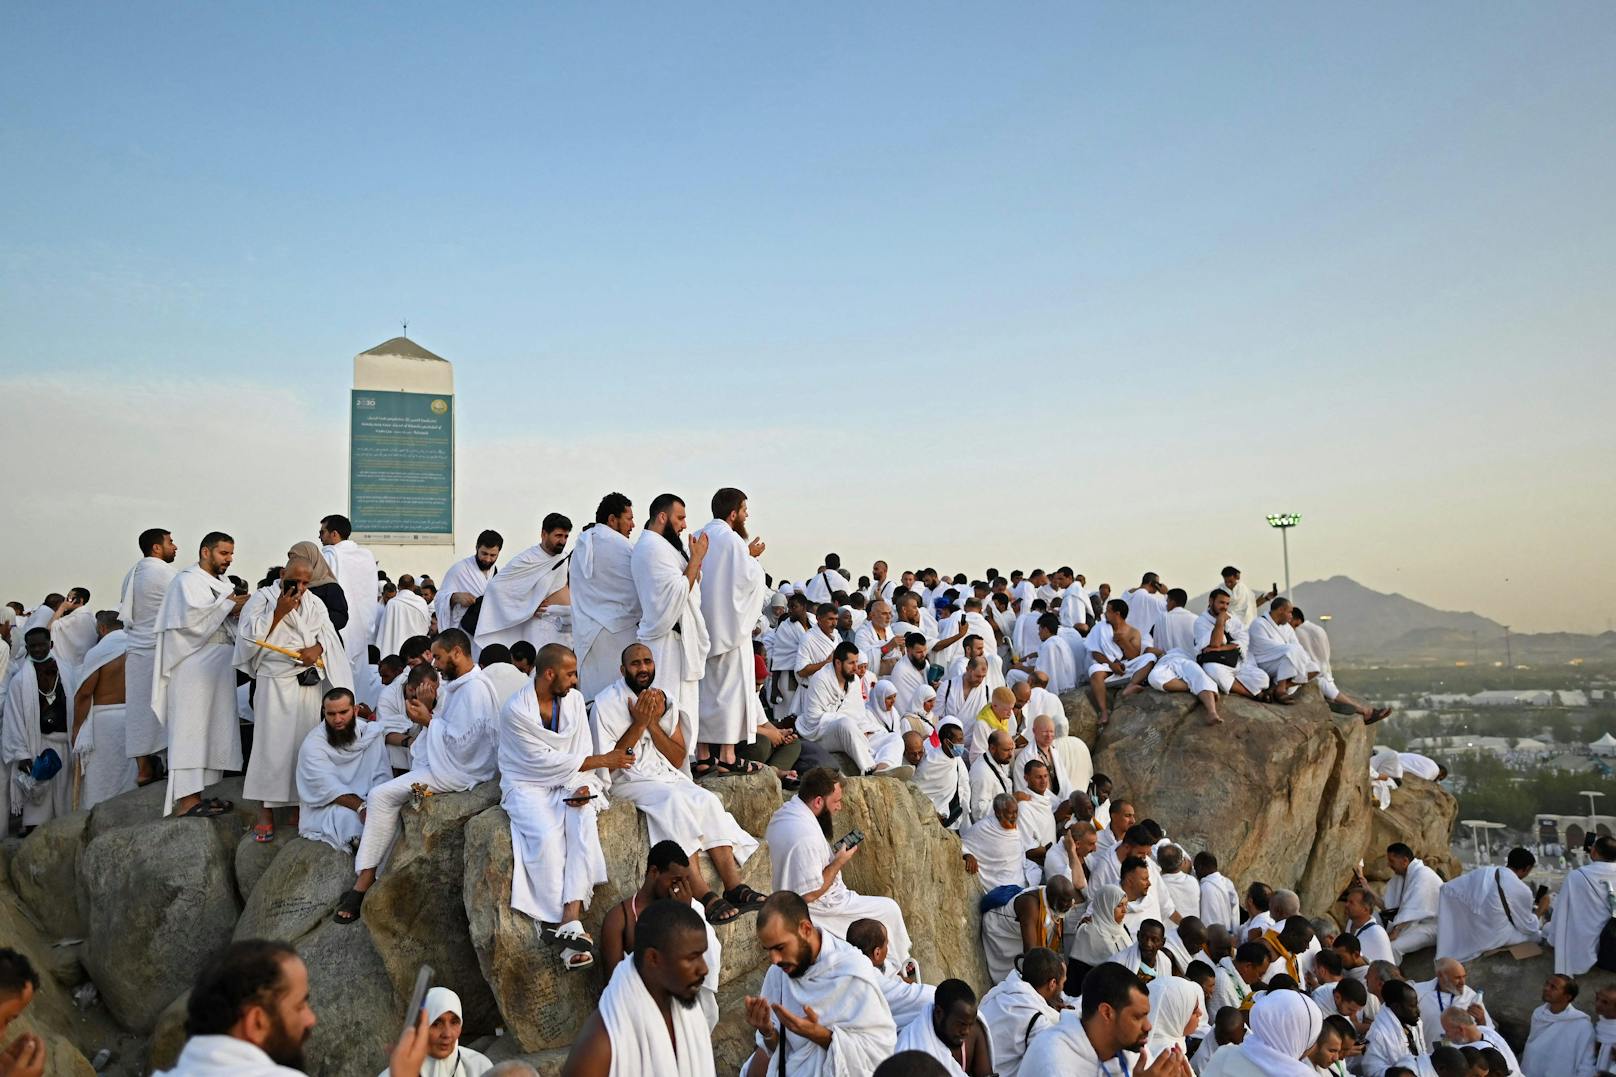 Gläubige pilgern bei 45-Grad-Hitze auf Berg Arafat